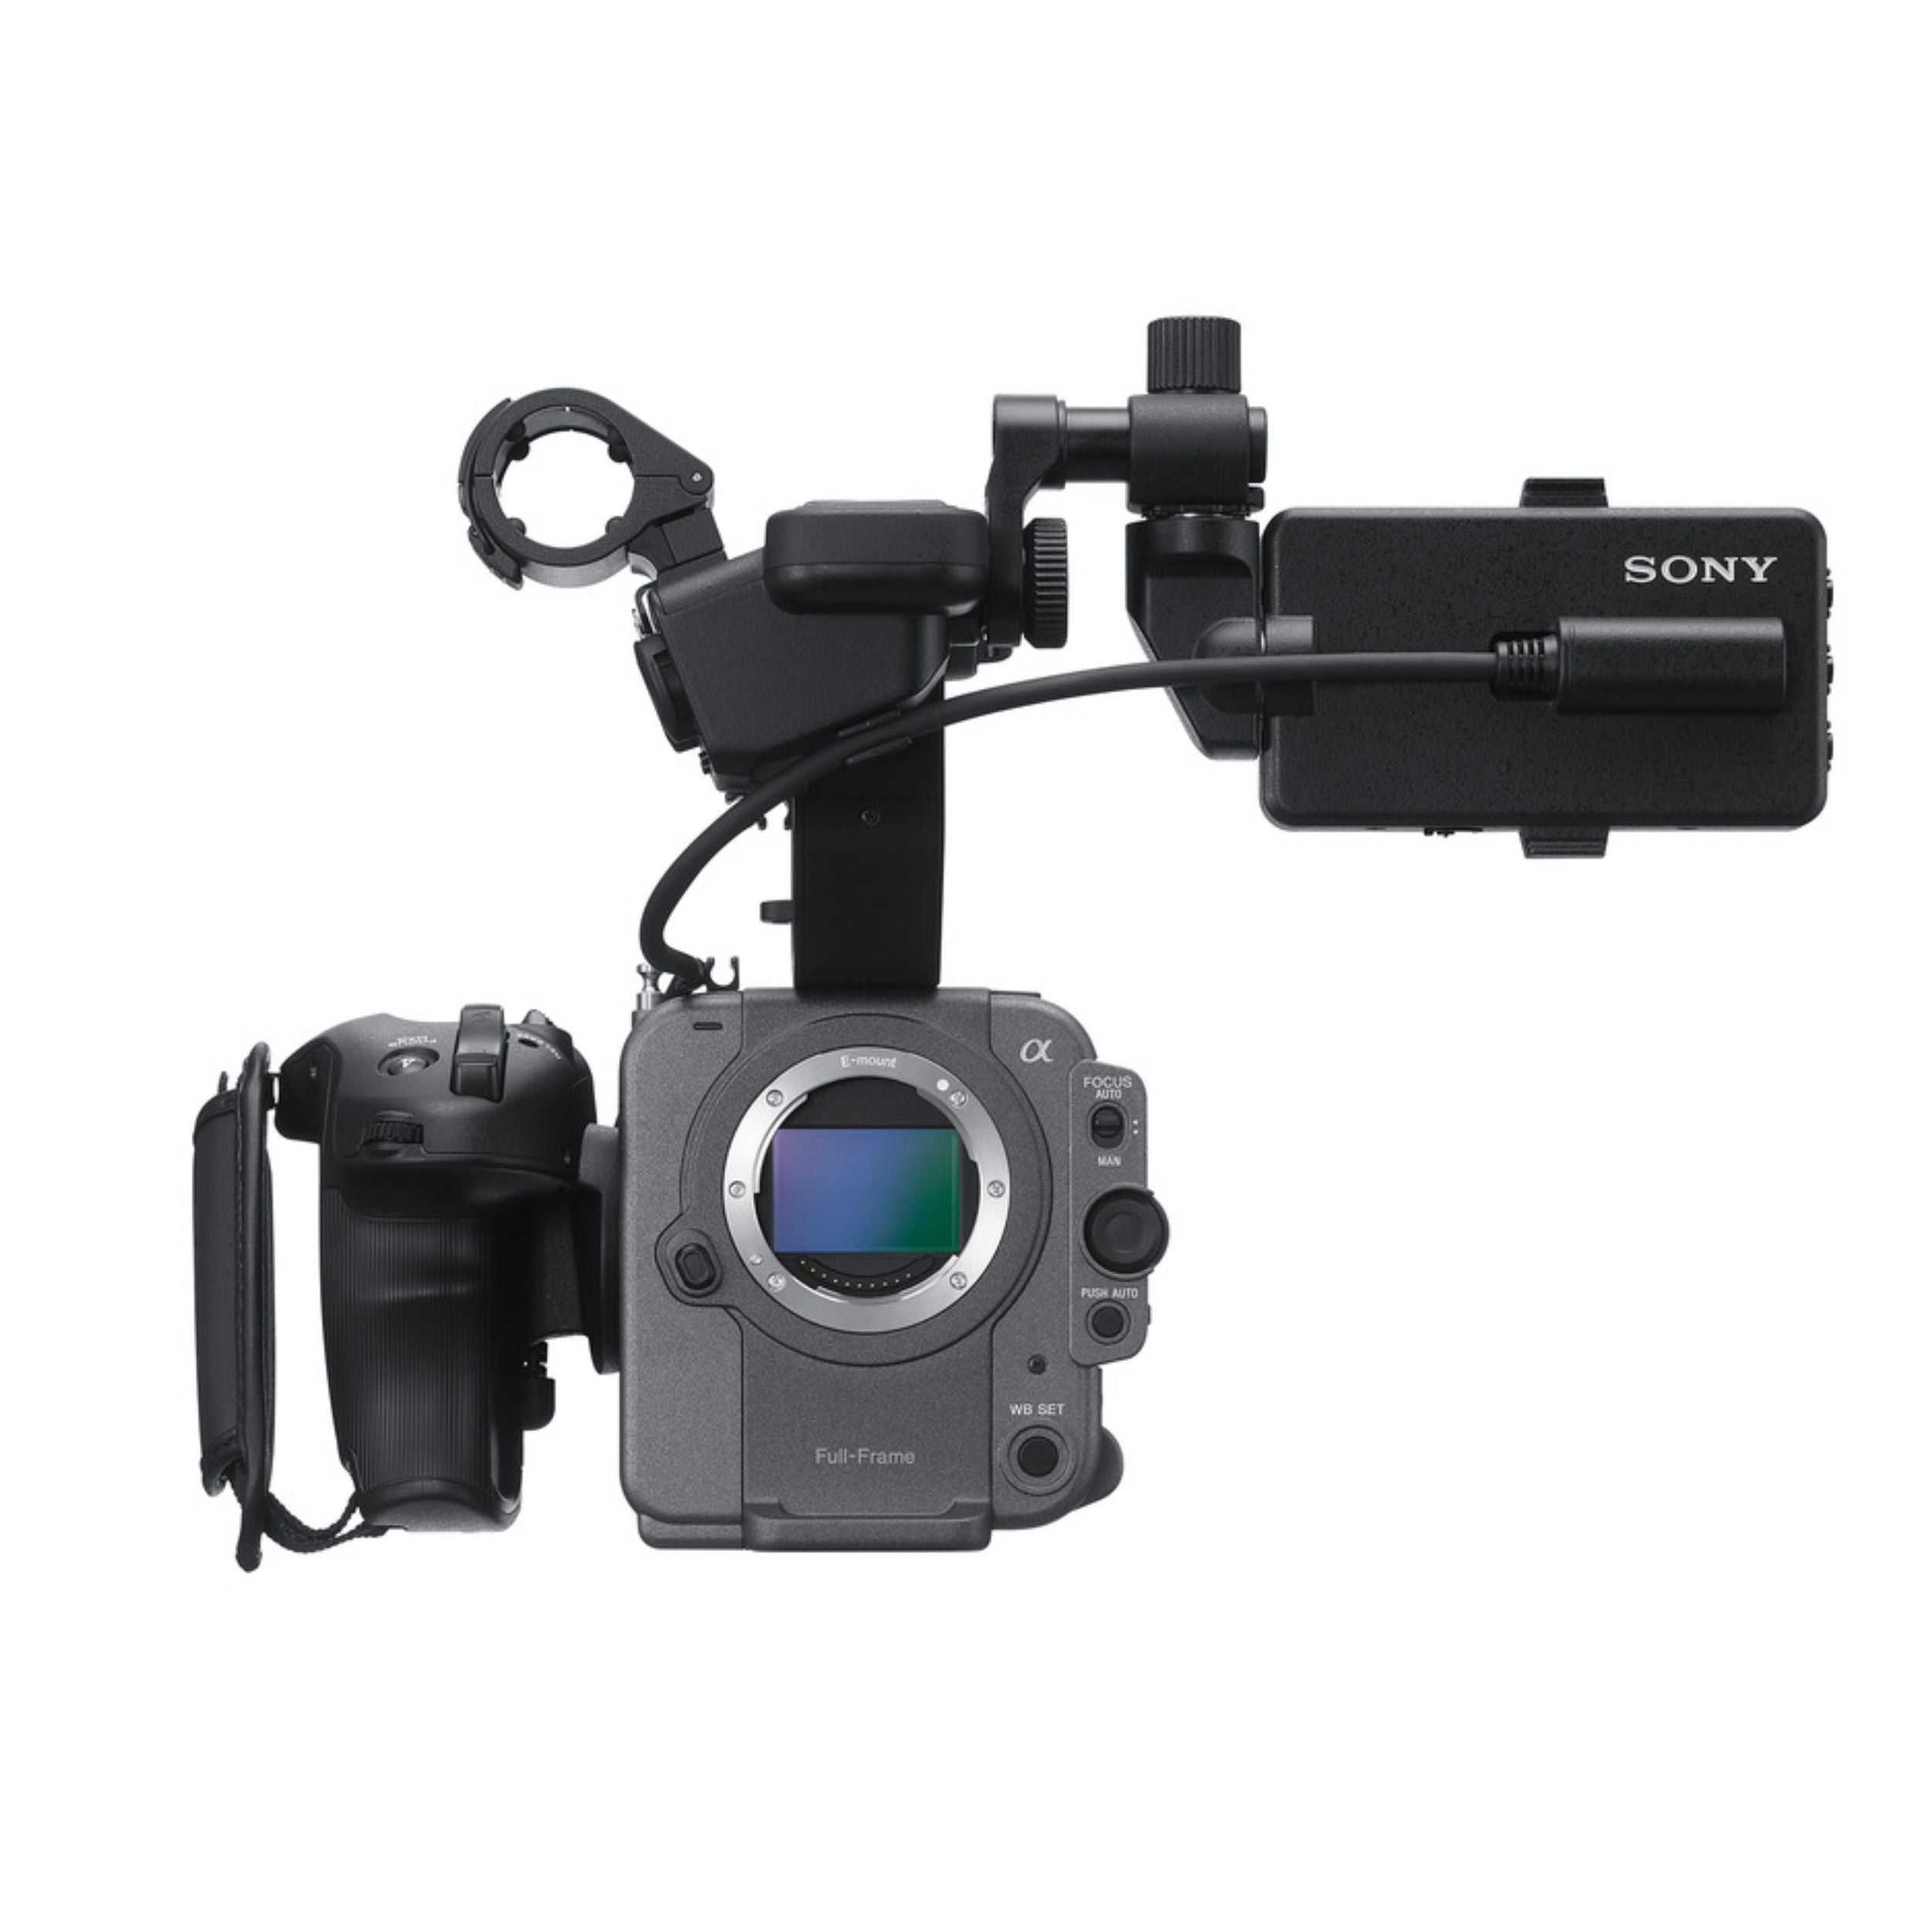 ILME-FX6V Cinema Line full-frame camera with 4K/120p (Body only)